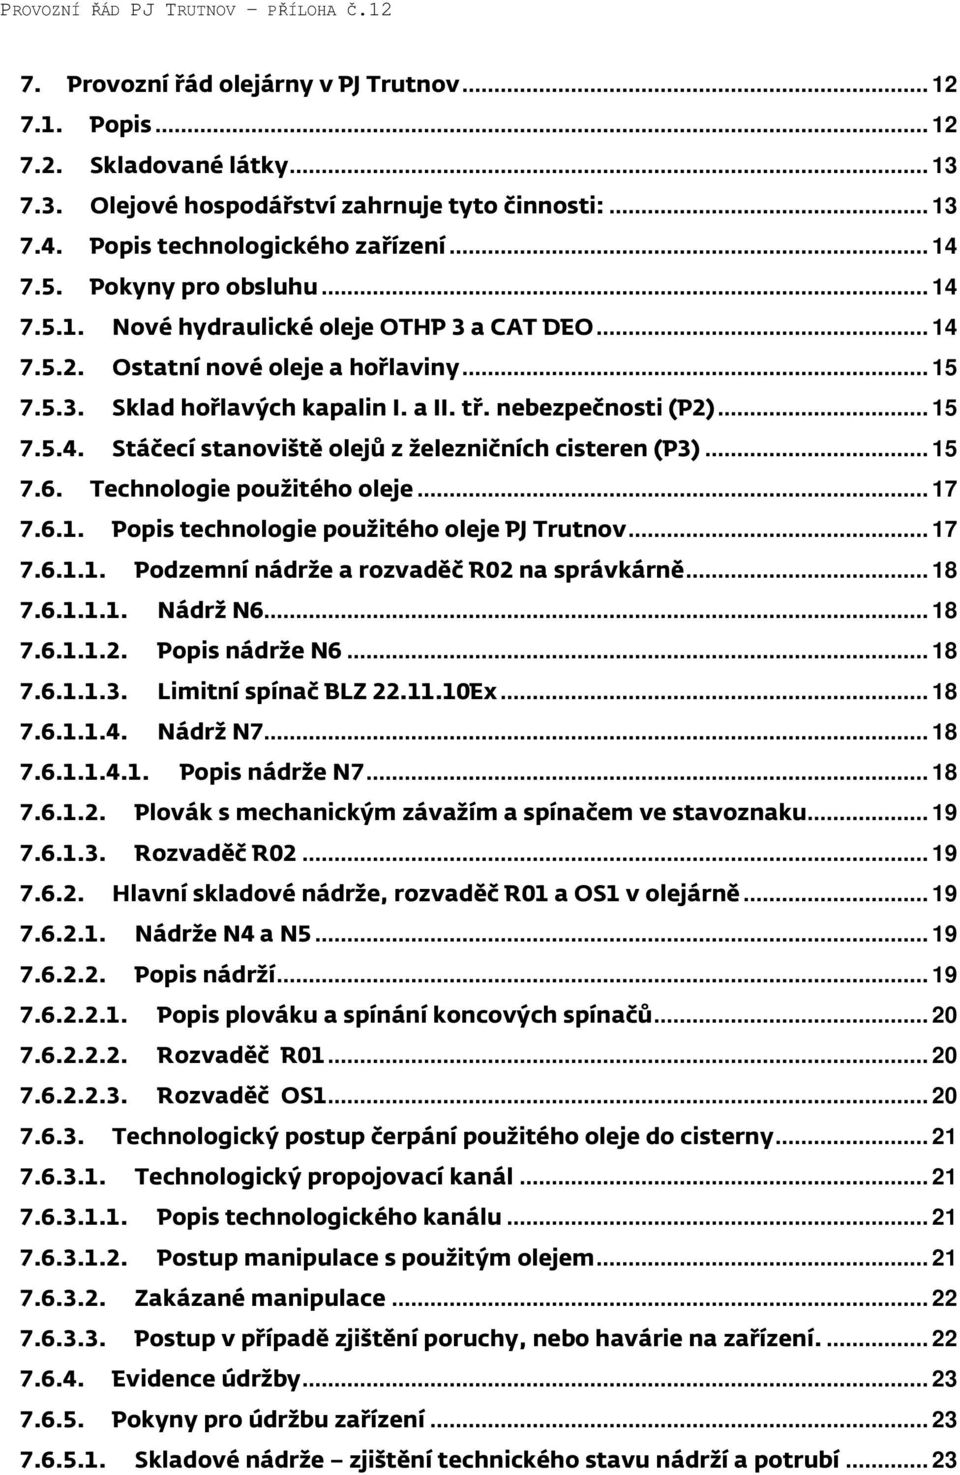 .. 15 7.6. Technologie použitého oleje... 17 7.6.1. Popis technologie použitého oleje PJ Trutnov... 17 7.6.1.1. Podzemní nádrže a rozvaděč R02 na správkárně... 18 7.6.1.1.1. Nádrž N6... 18 7.6.1.1.2. Popis nádrže N6.